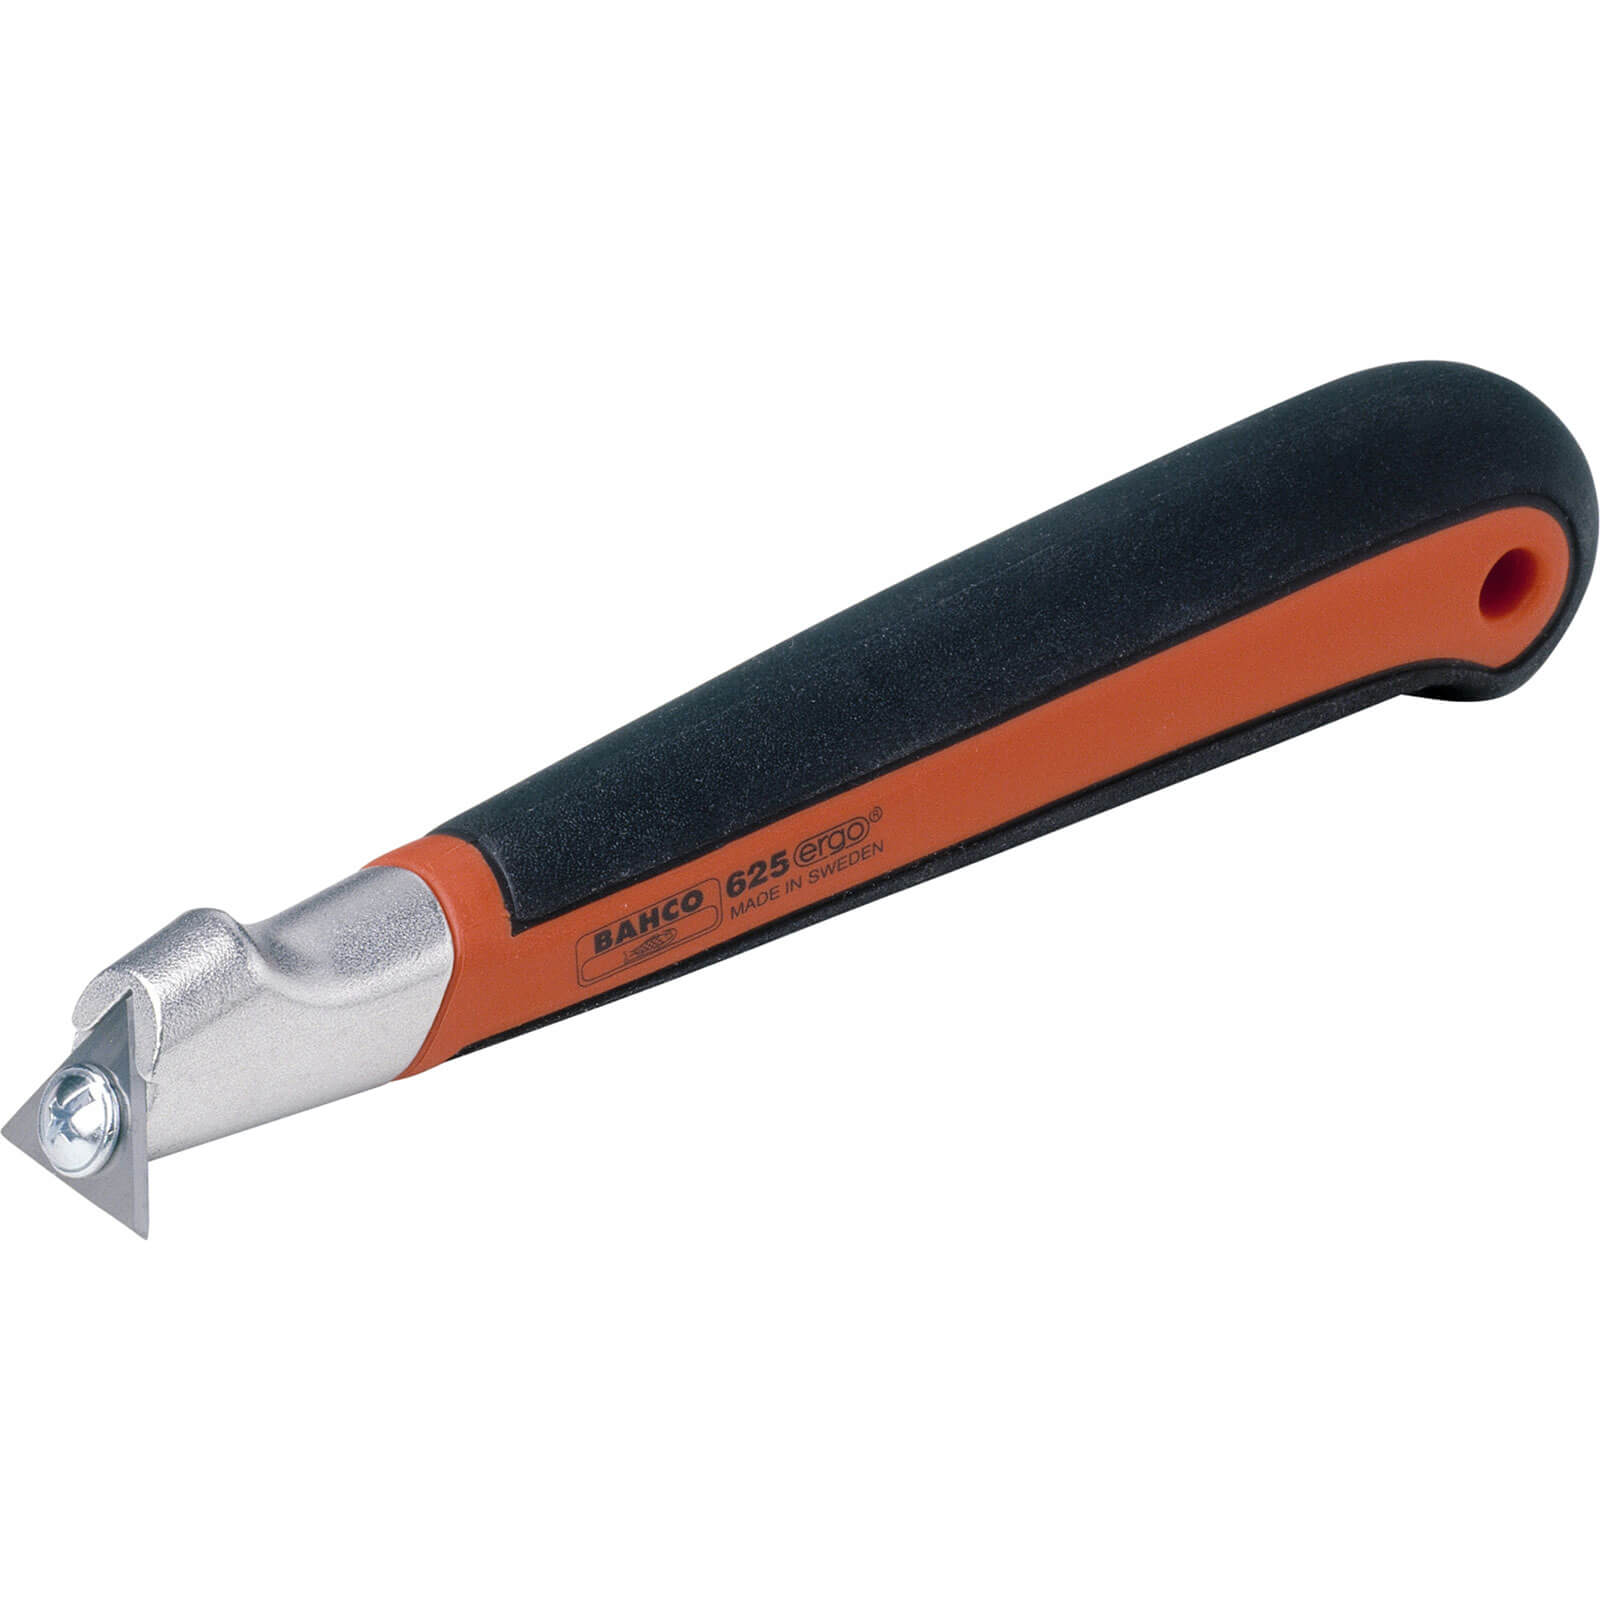 Image of Bahco Pocket Scraper Carbide Blade